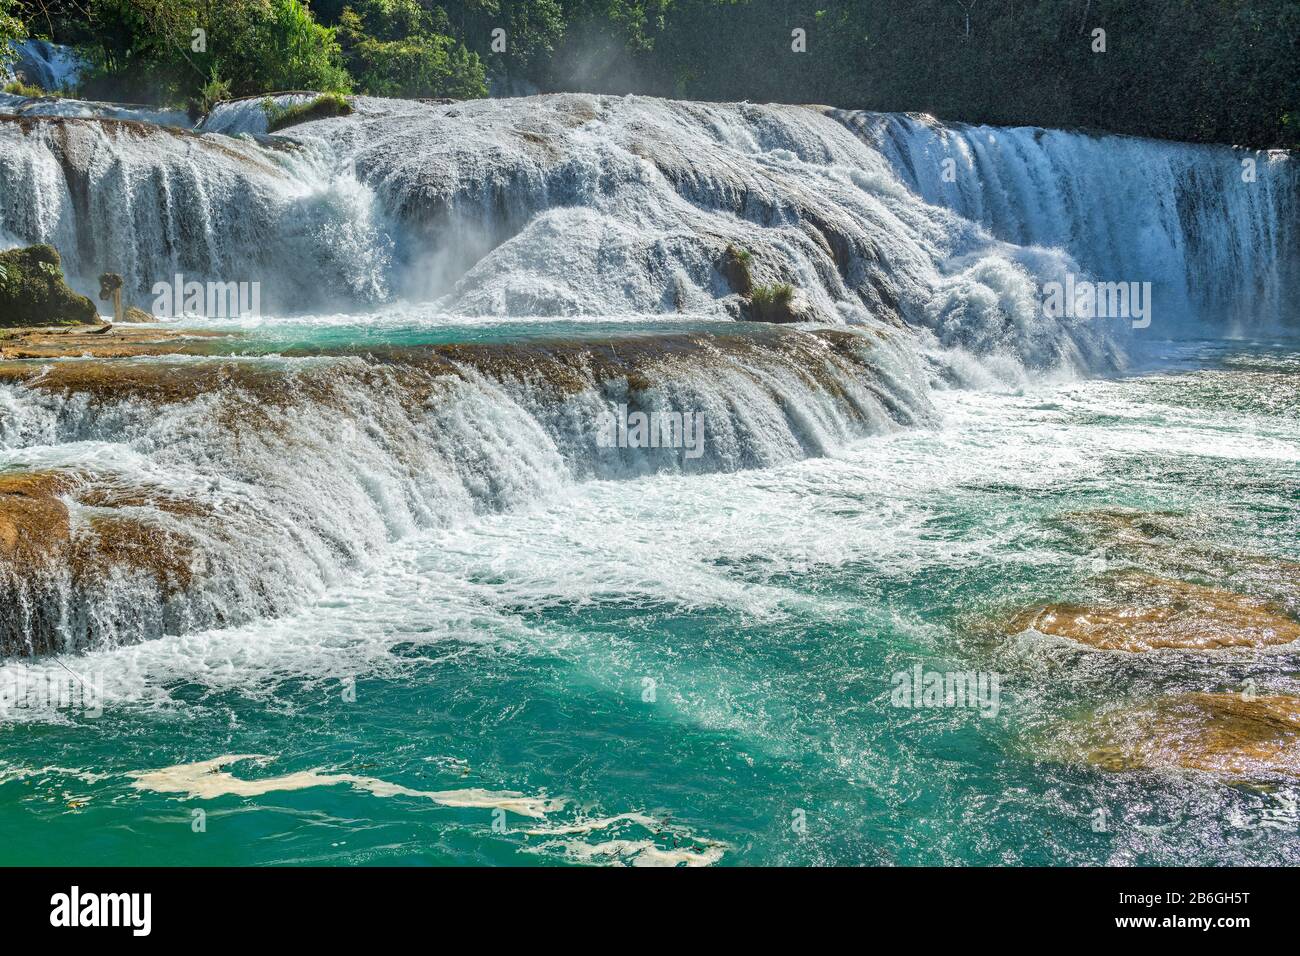 Das türkisfarbene Wasser des Agua Azul Wasserfalls, der mit Gewalt abfließt, erzeugt im Regenwald von Chiapas in der Nähe von Palenque, Mexiko viel Spray in der Luft. Stockfoto